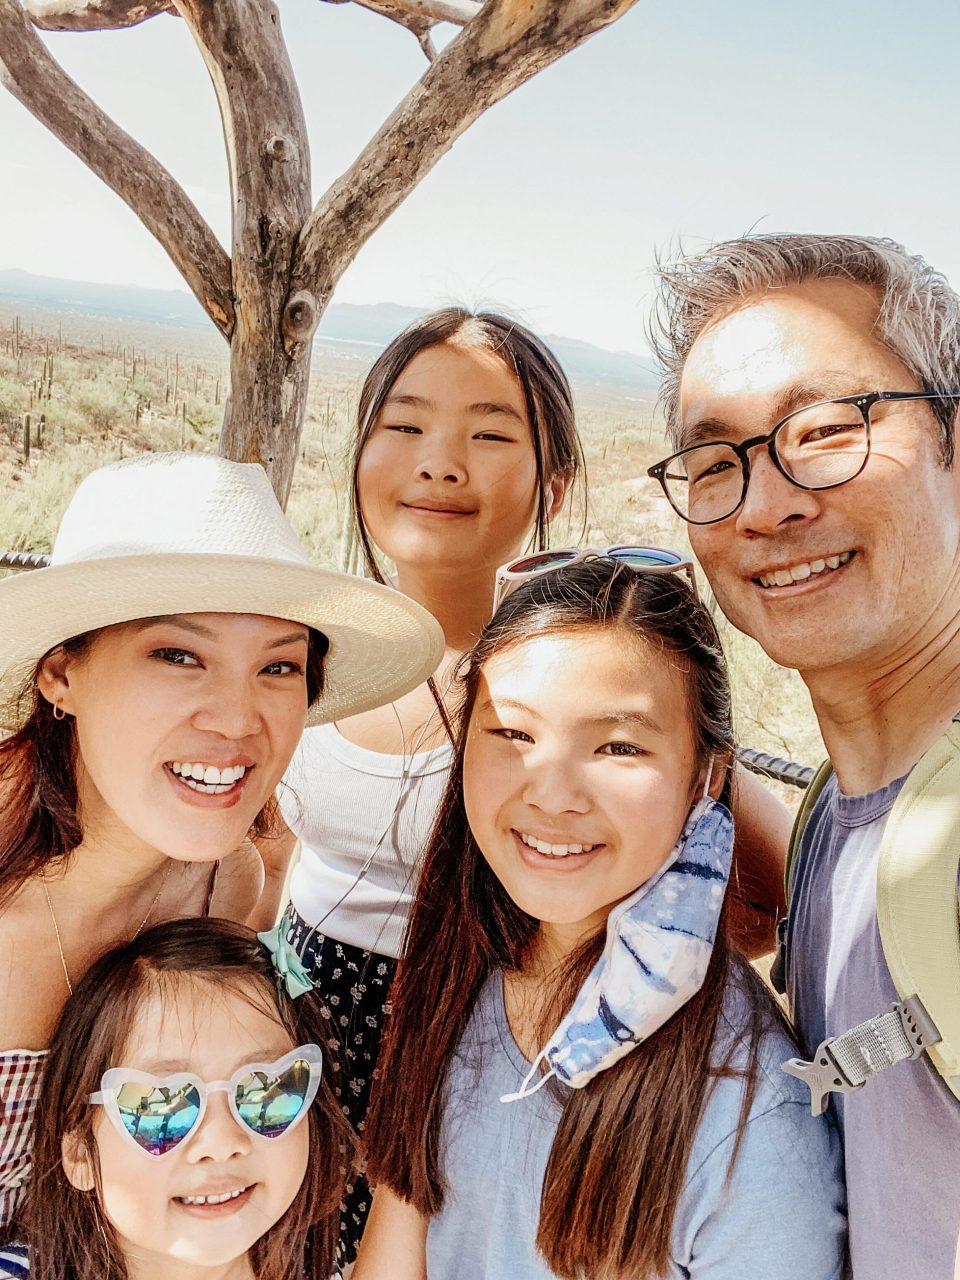 the whole Yokota family smiles in the desert shade! 